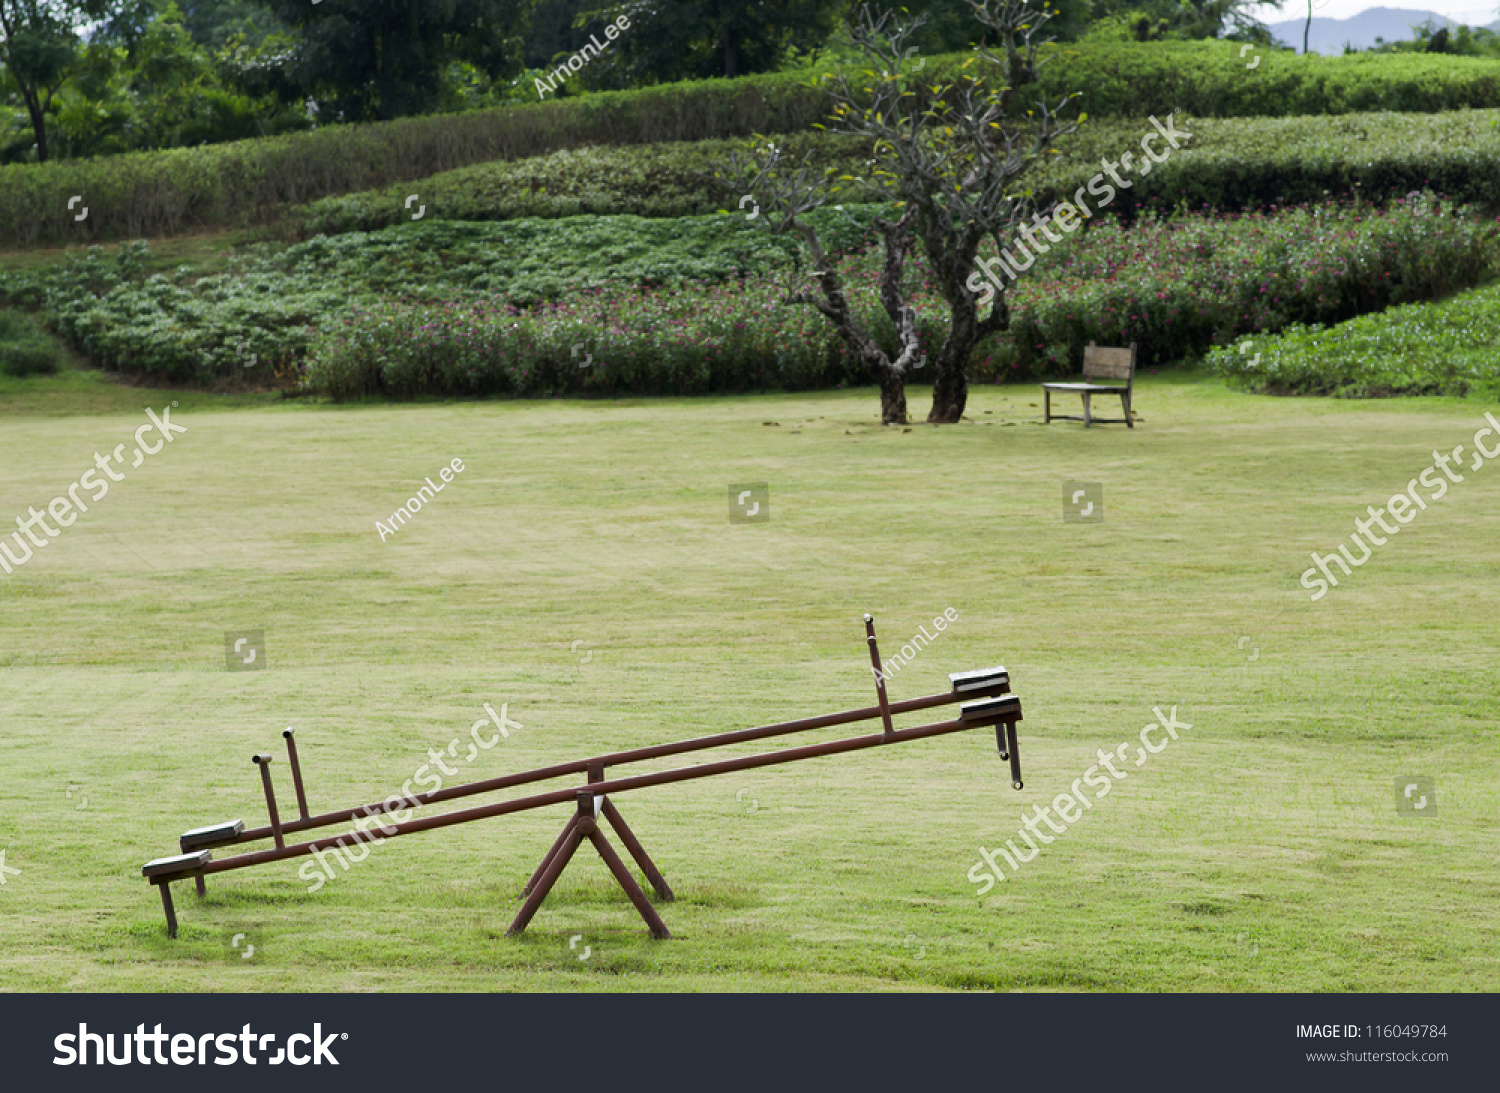 garden seesaw